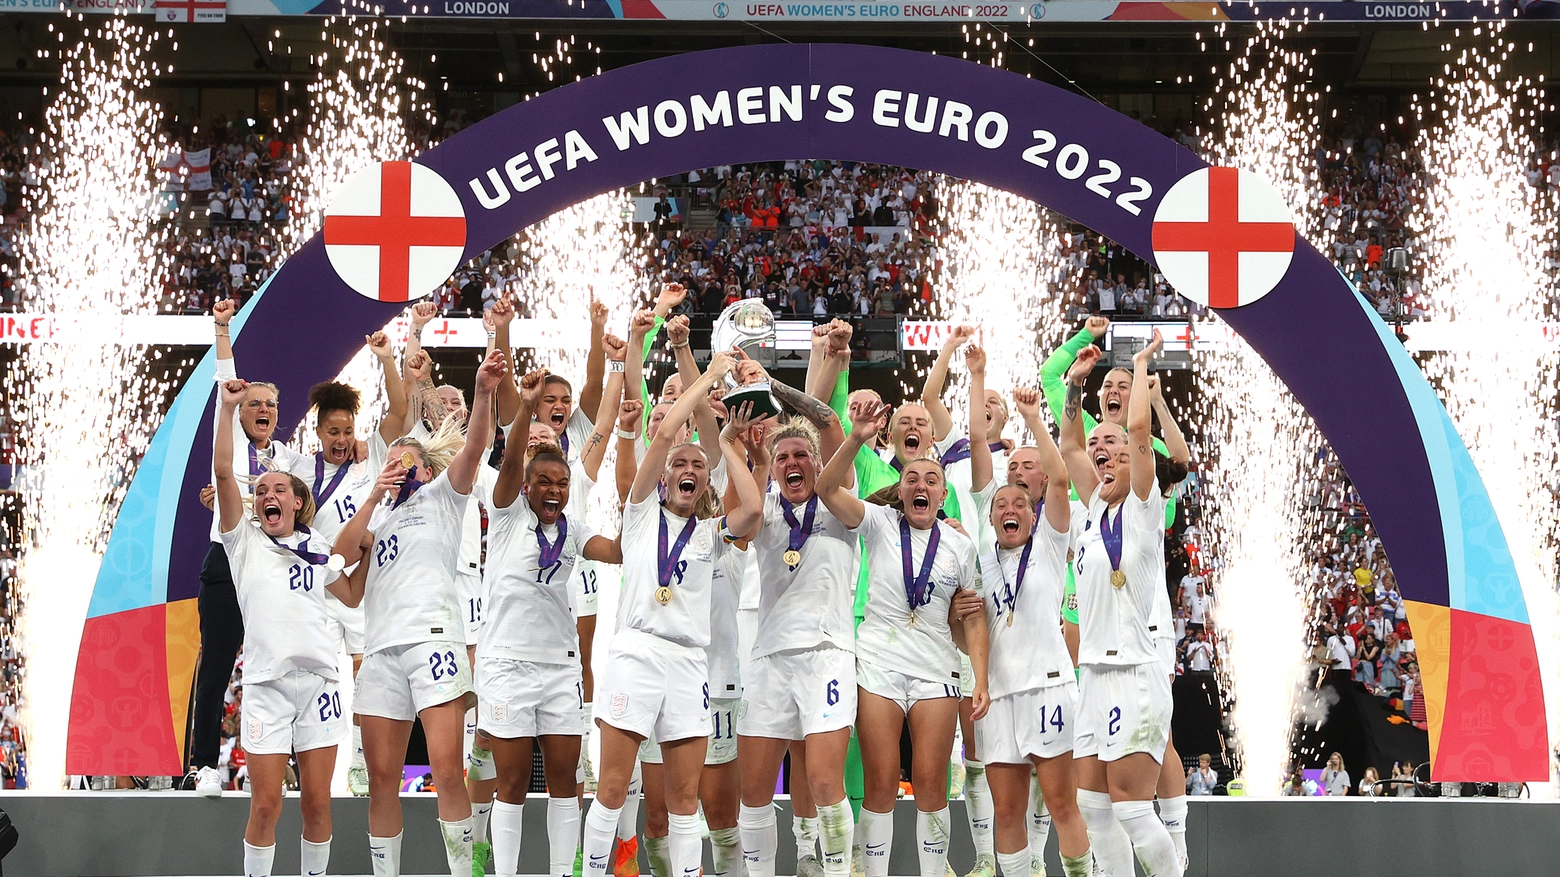 L'Inghilterra trionfa all'Europei donne (foto Twitter UEFA Women's EURO 2022)